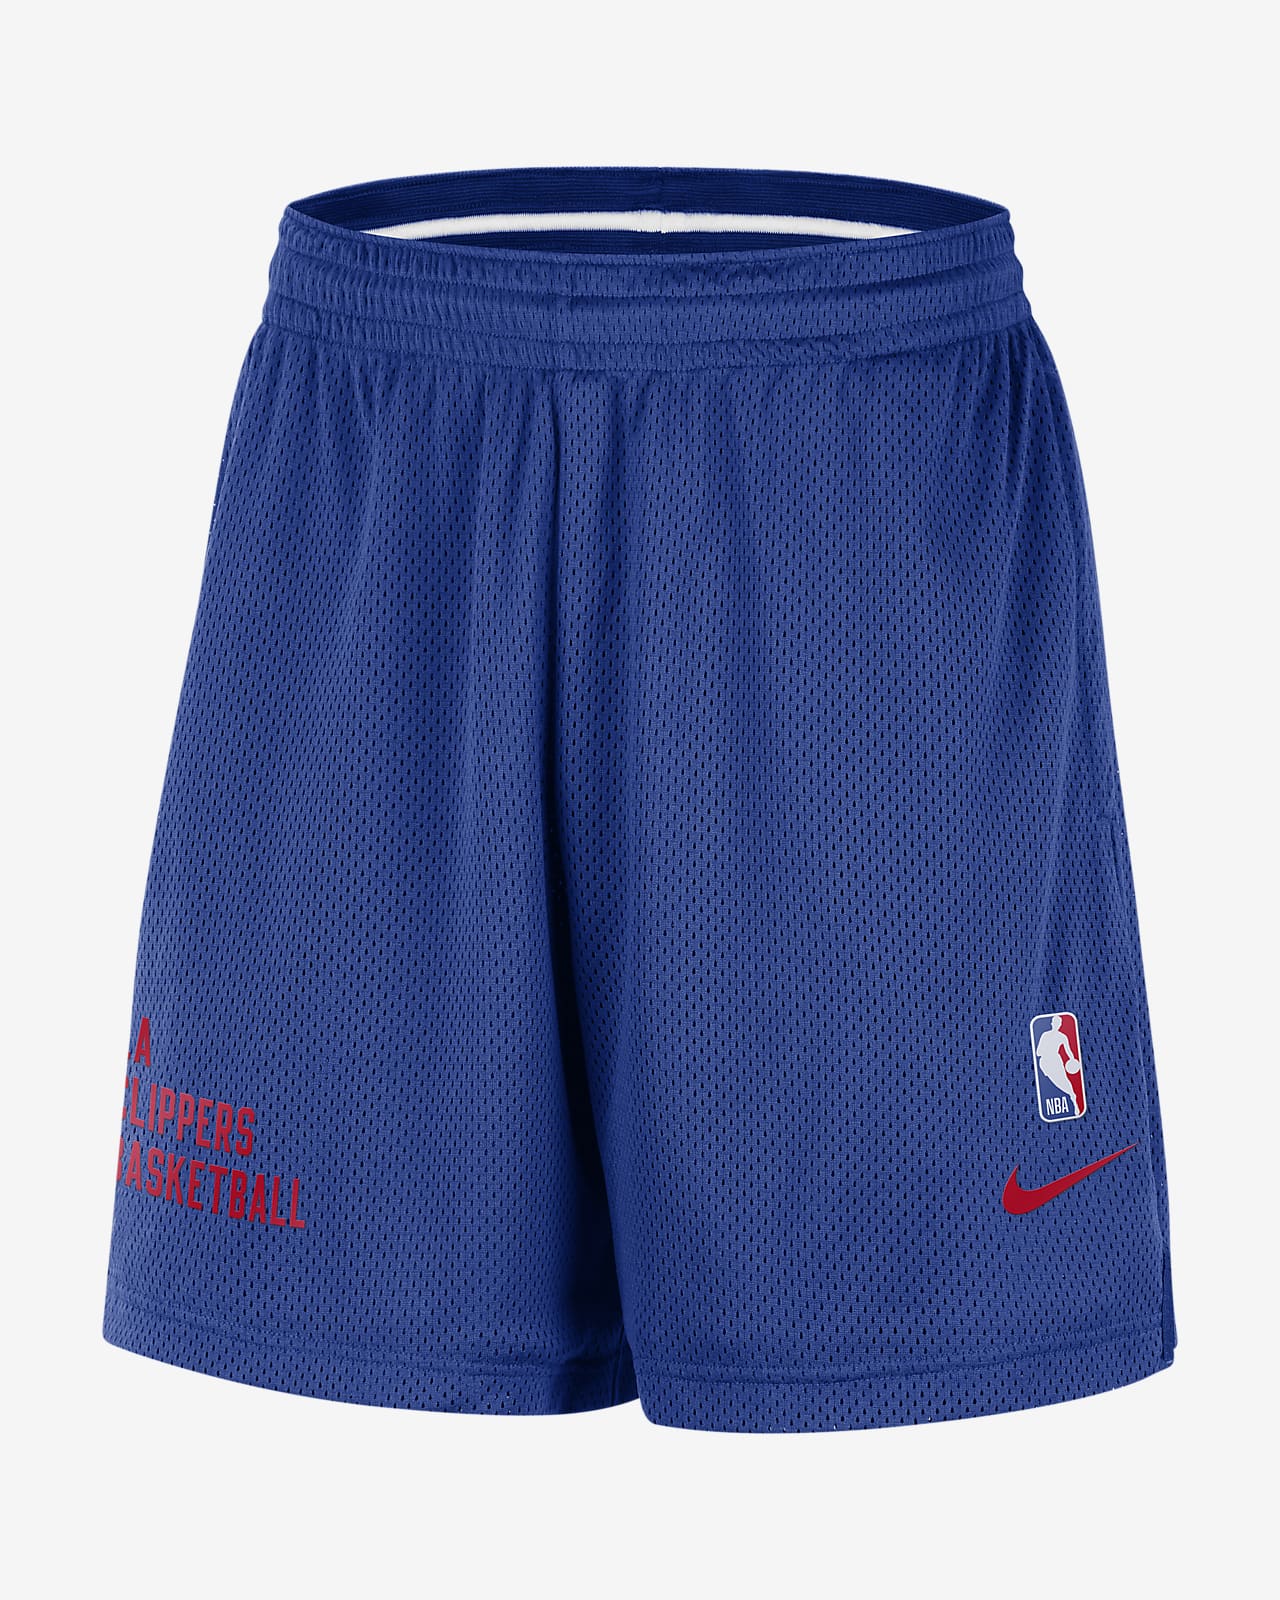 Shorts de malla Nike NBA para hombre LA Clippers